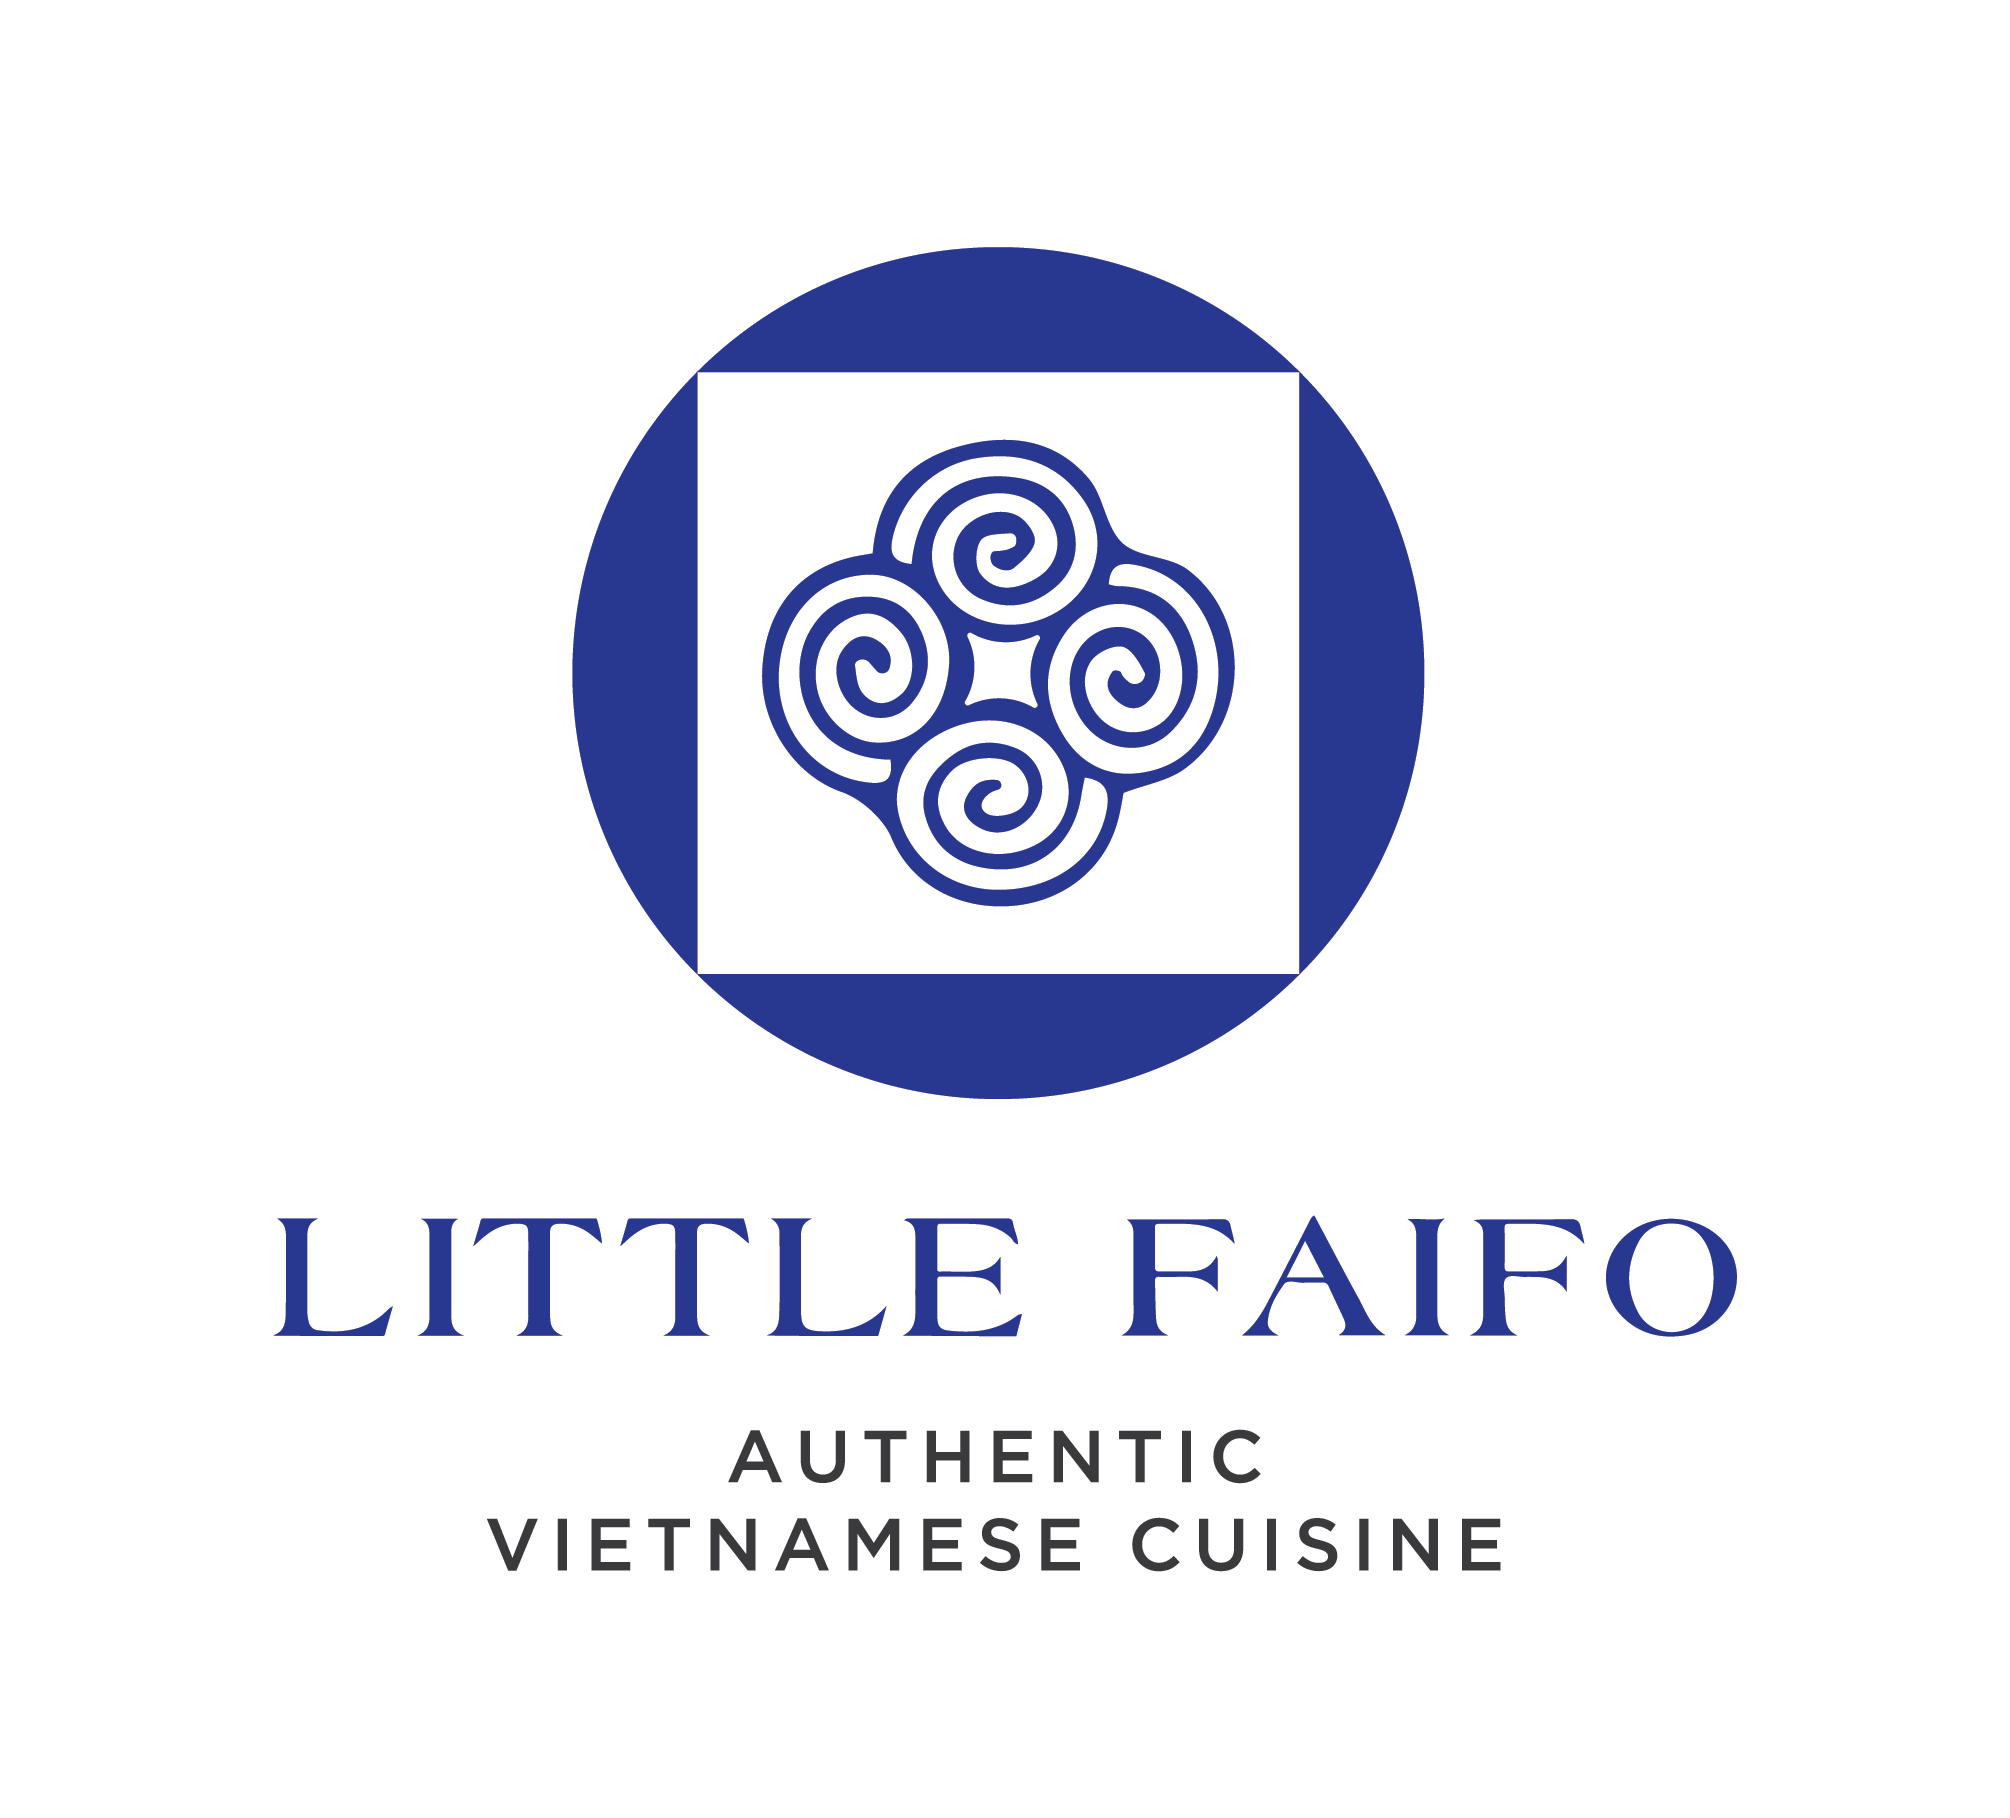 Little Faifo. Authentic Vietnamese Cuisine